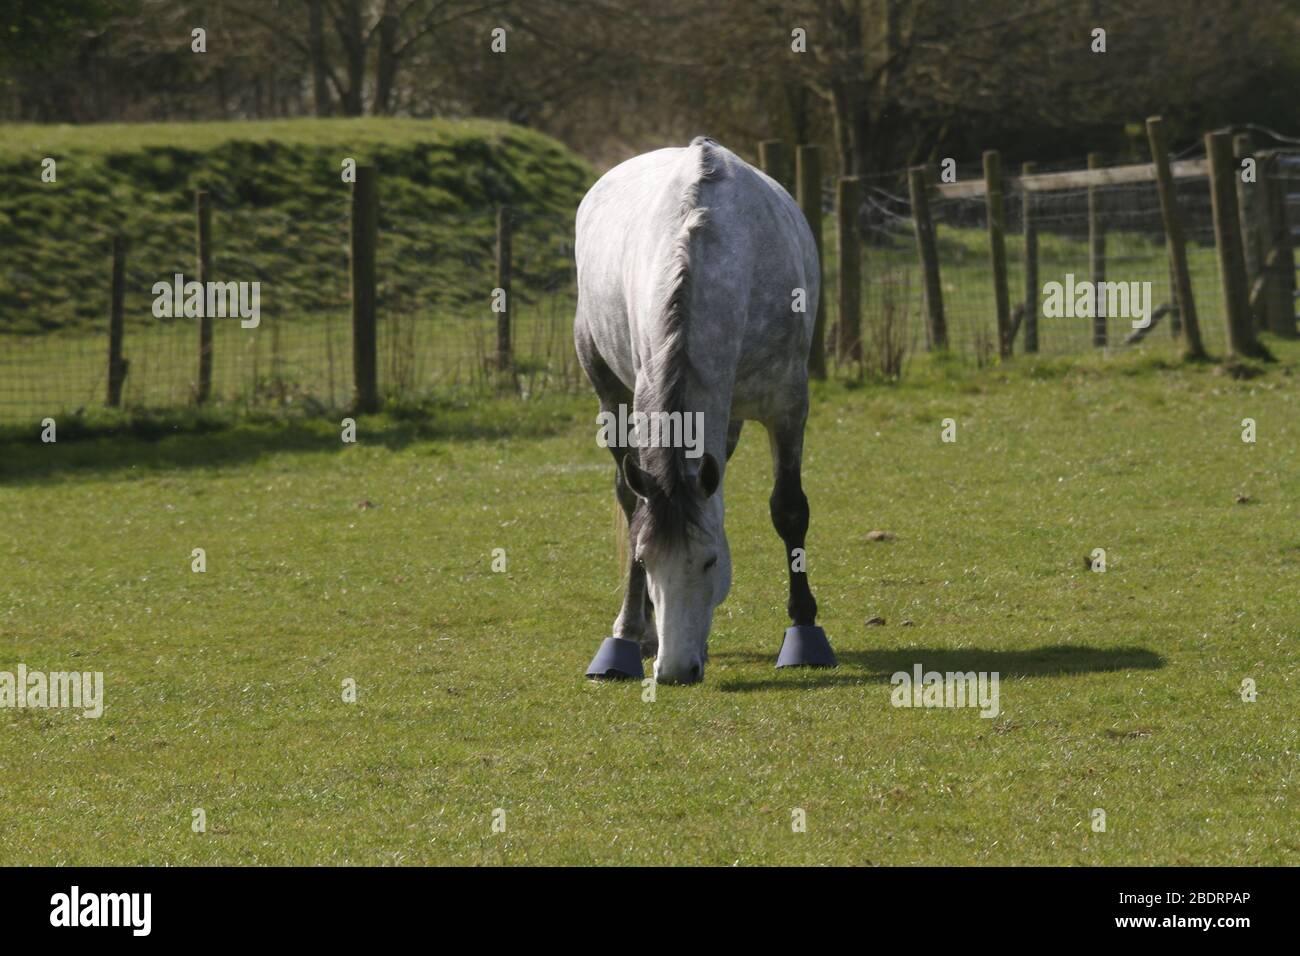 White horse, UK Stock Photo